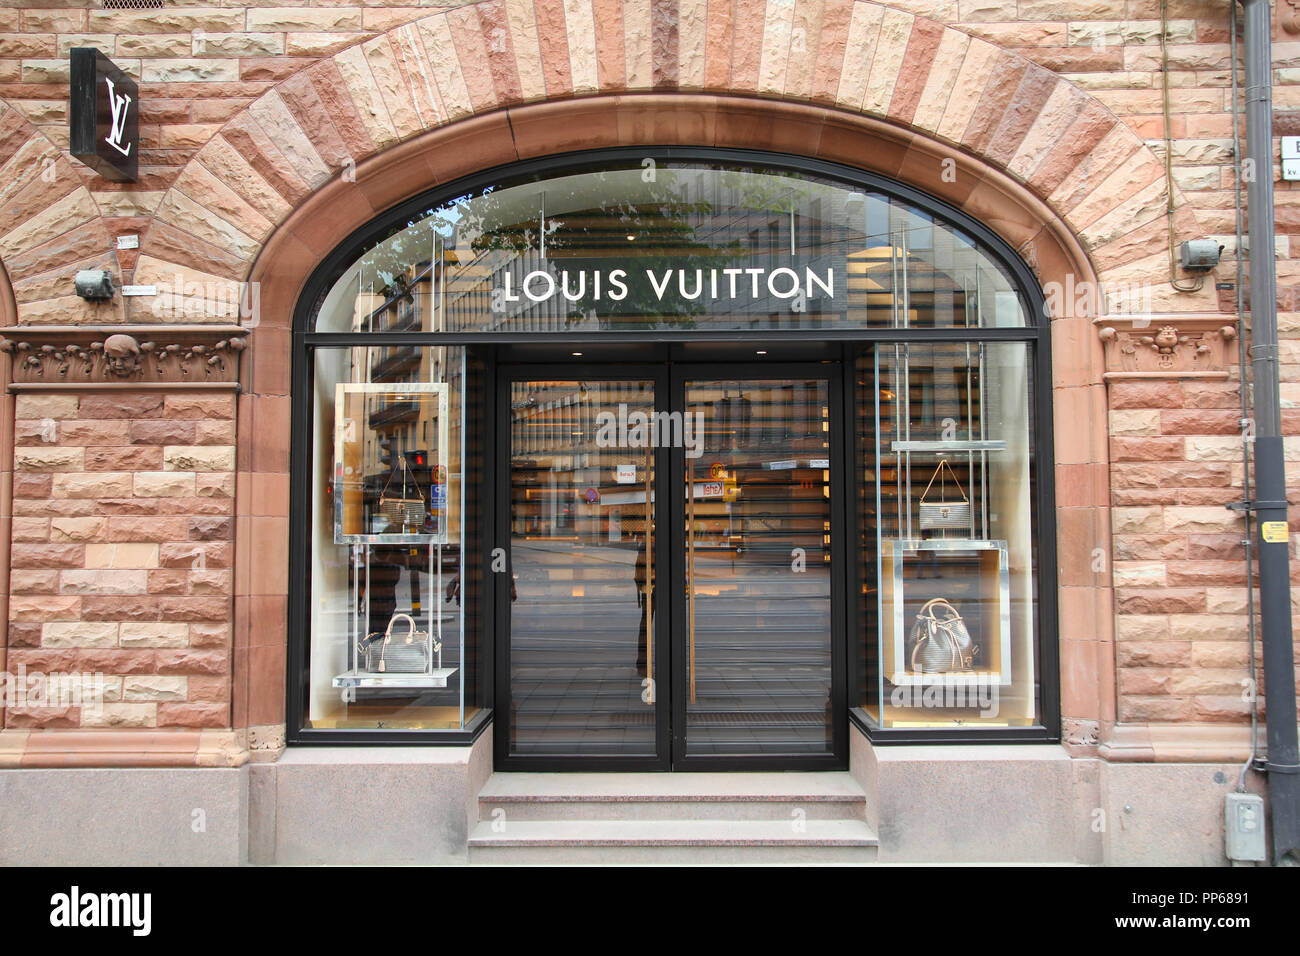 Louis Vuitton opens a Maison in Aventura Mall, Miami.com